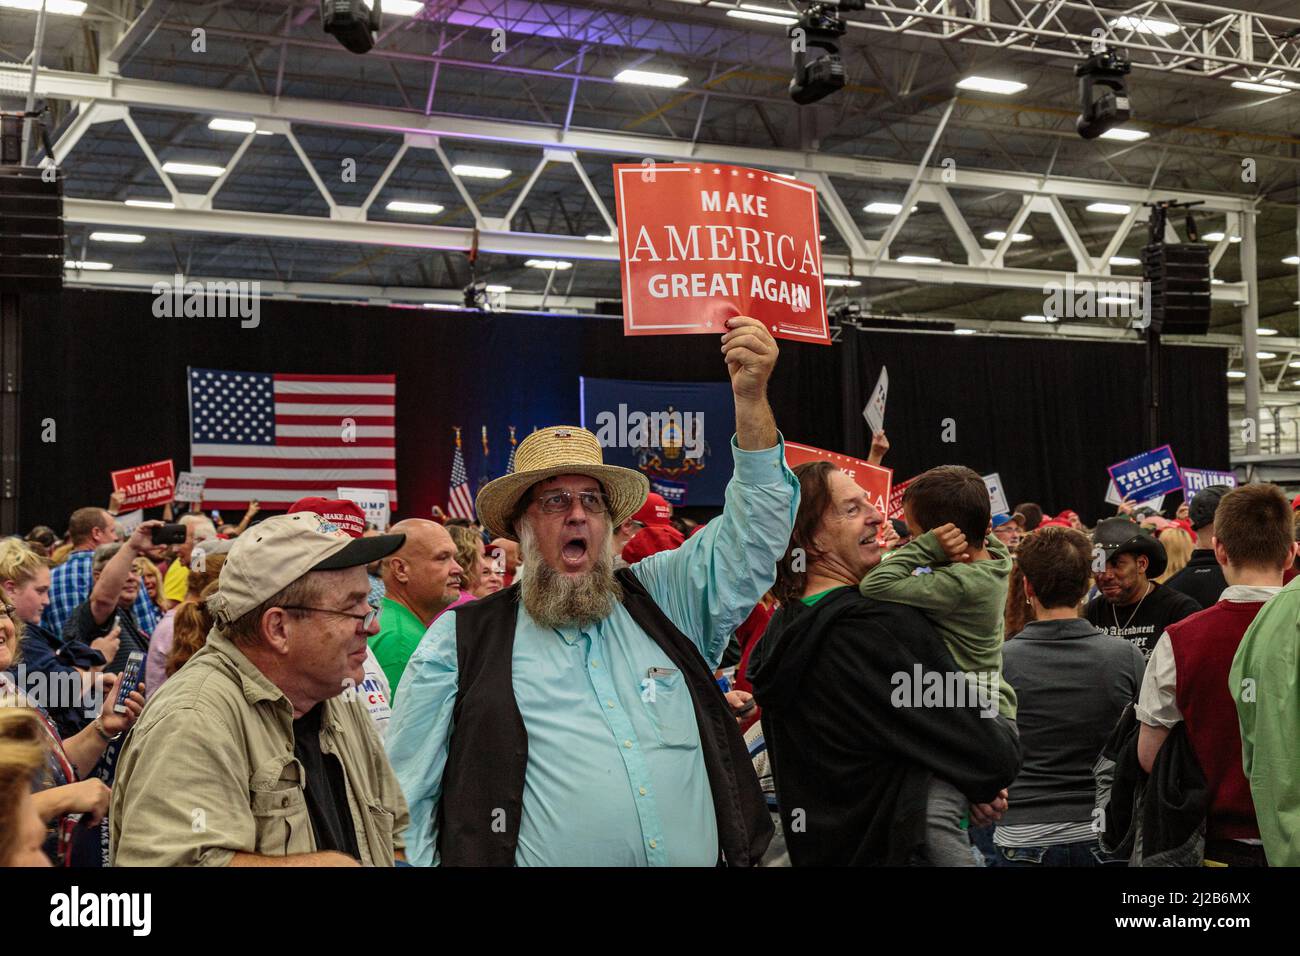 Manheim, PA, USA - 1. Oktober 2016: Ein Amishman in Lancaster County unterstützt begeistert Make America Great Again, indem er ein Schild an einen Donald TR schwenkt Stockfoto